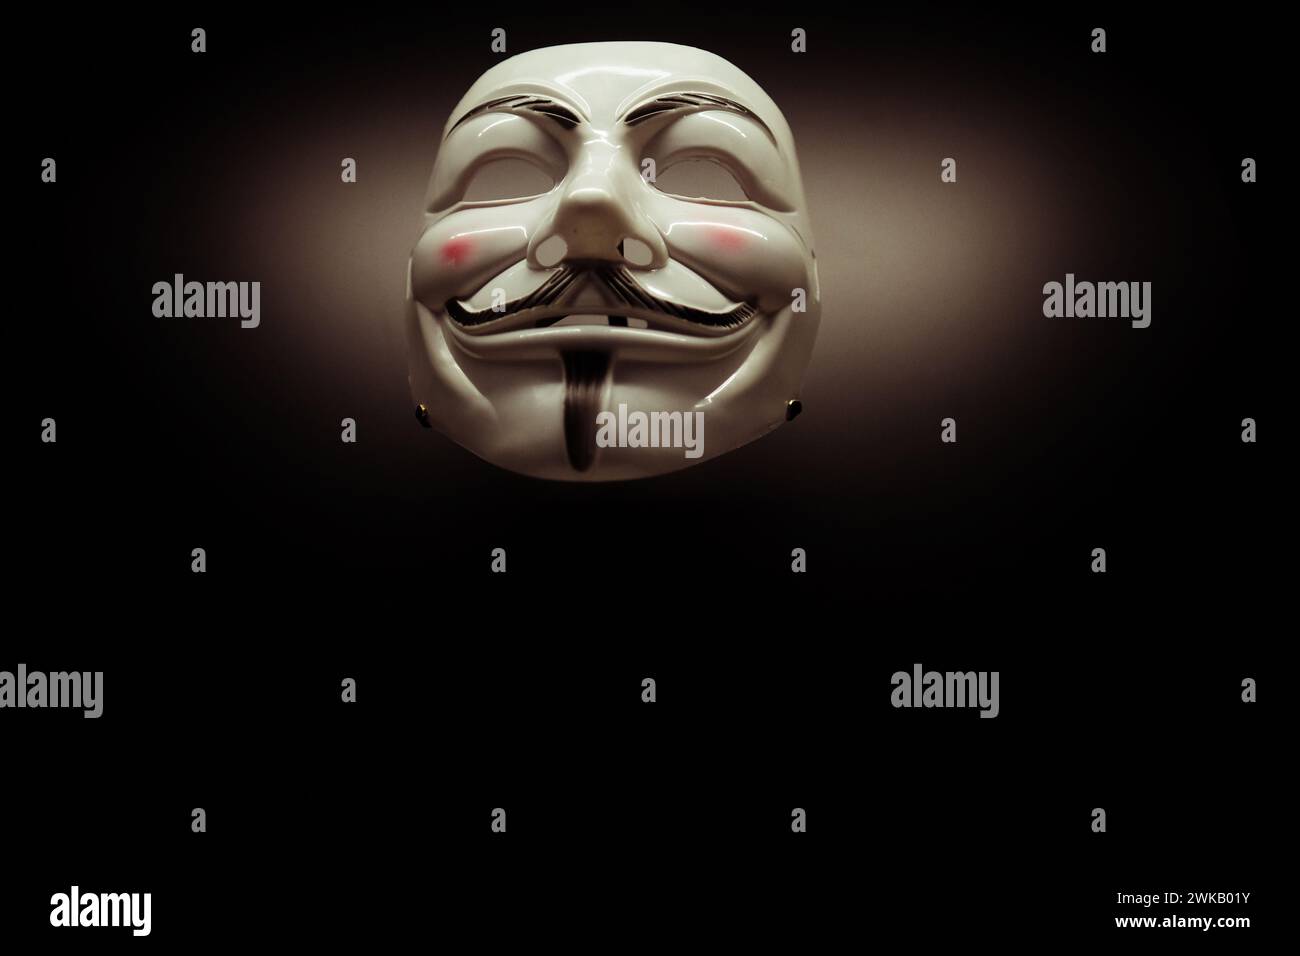 National Portrait Gallery London UK eine anonyme Maske im Stil von Guy Fawkes, die bei Demonstranten des 21. Jahrhunderts beliebt ist Stockfoto